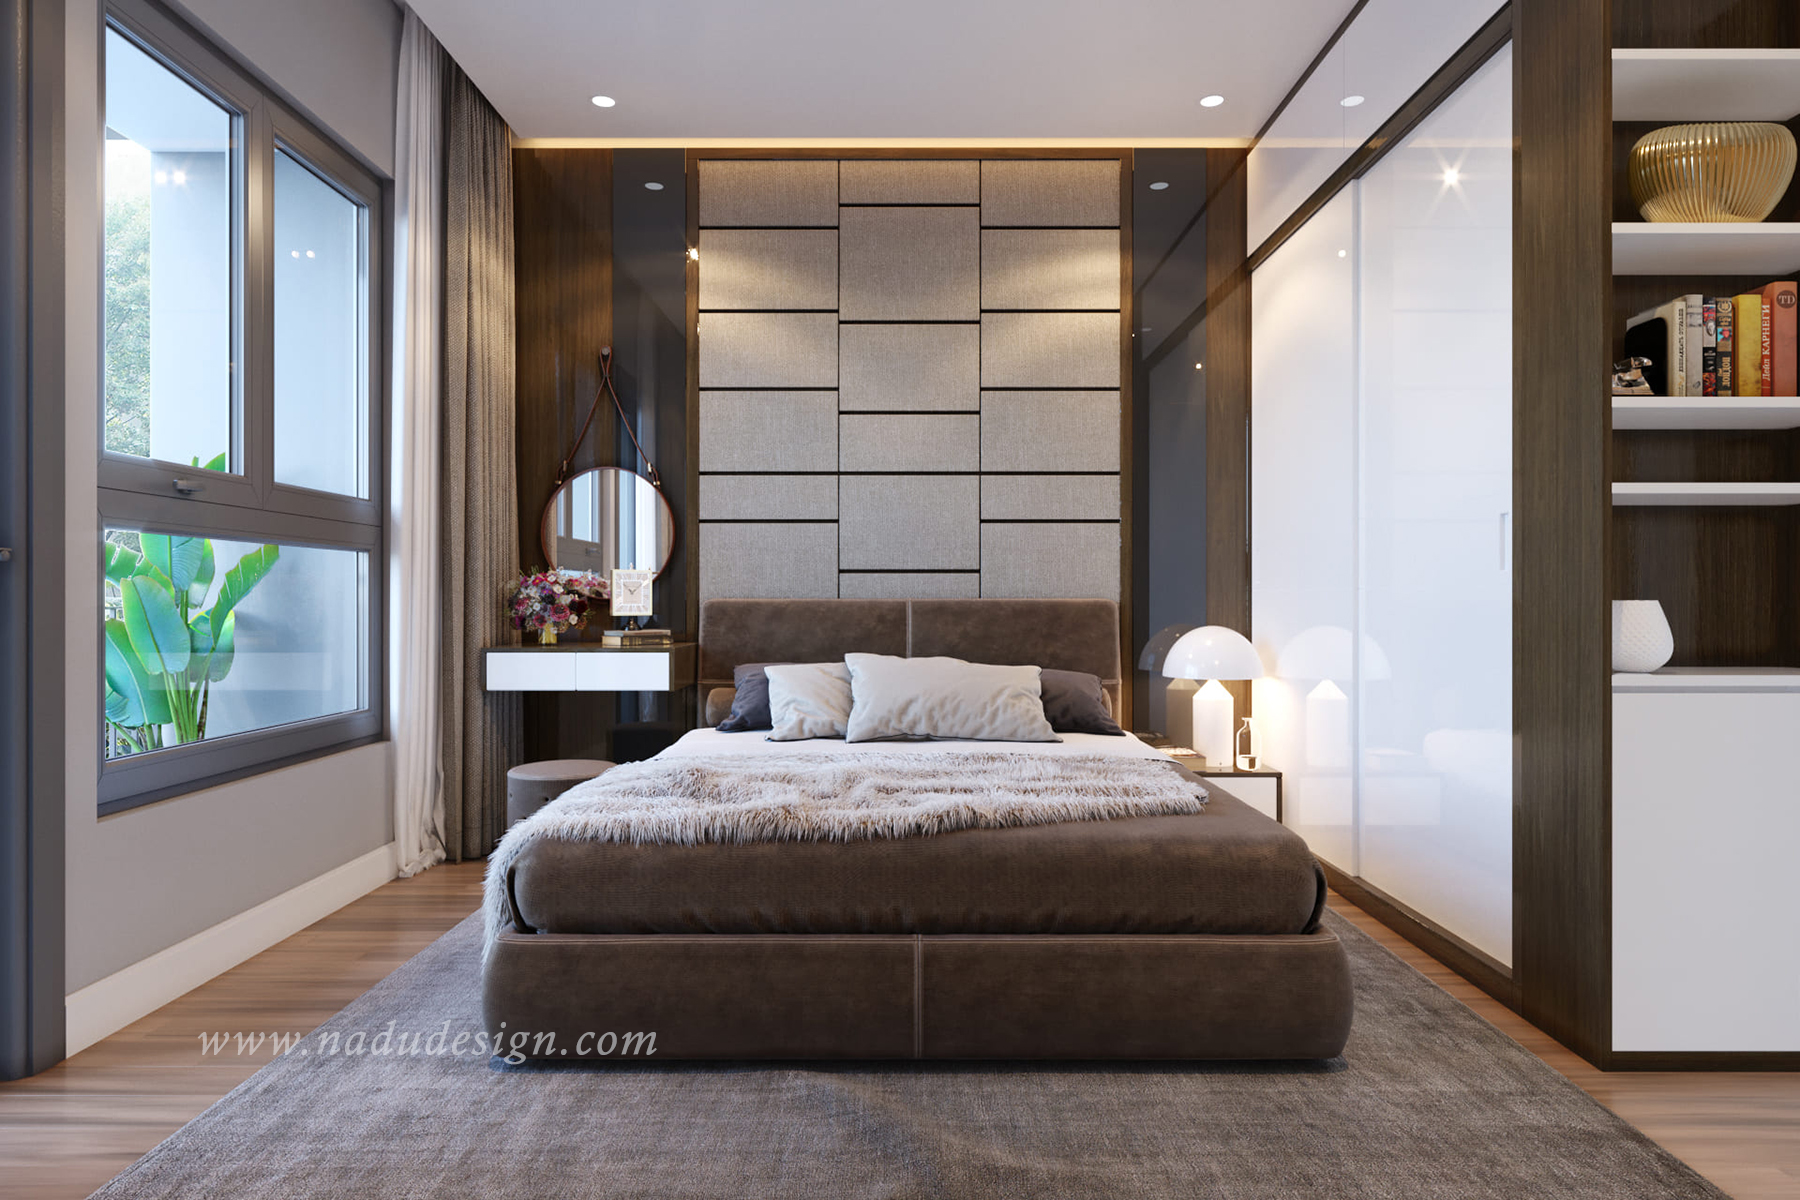 Top 5 mẫu thiết kế thi công nội thất căn hộ 2 phòng ngủ đẹp nhất